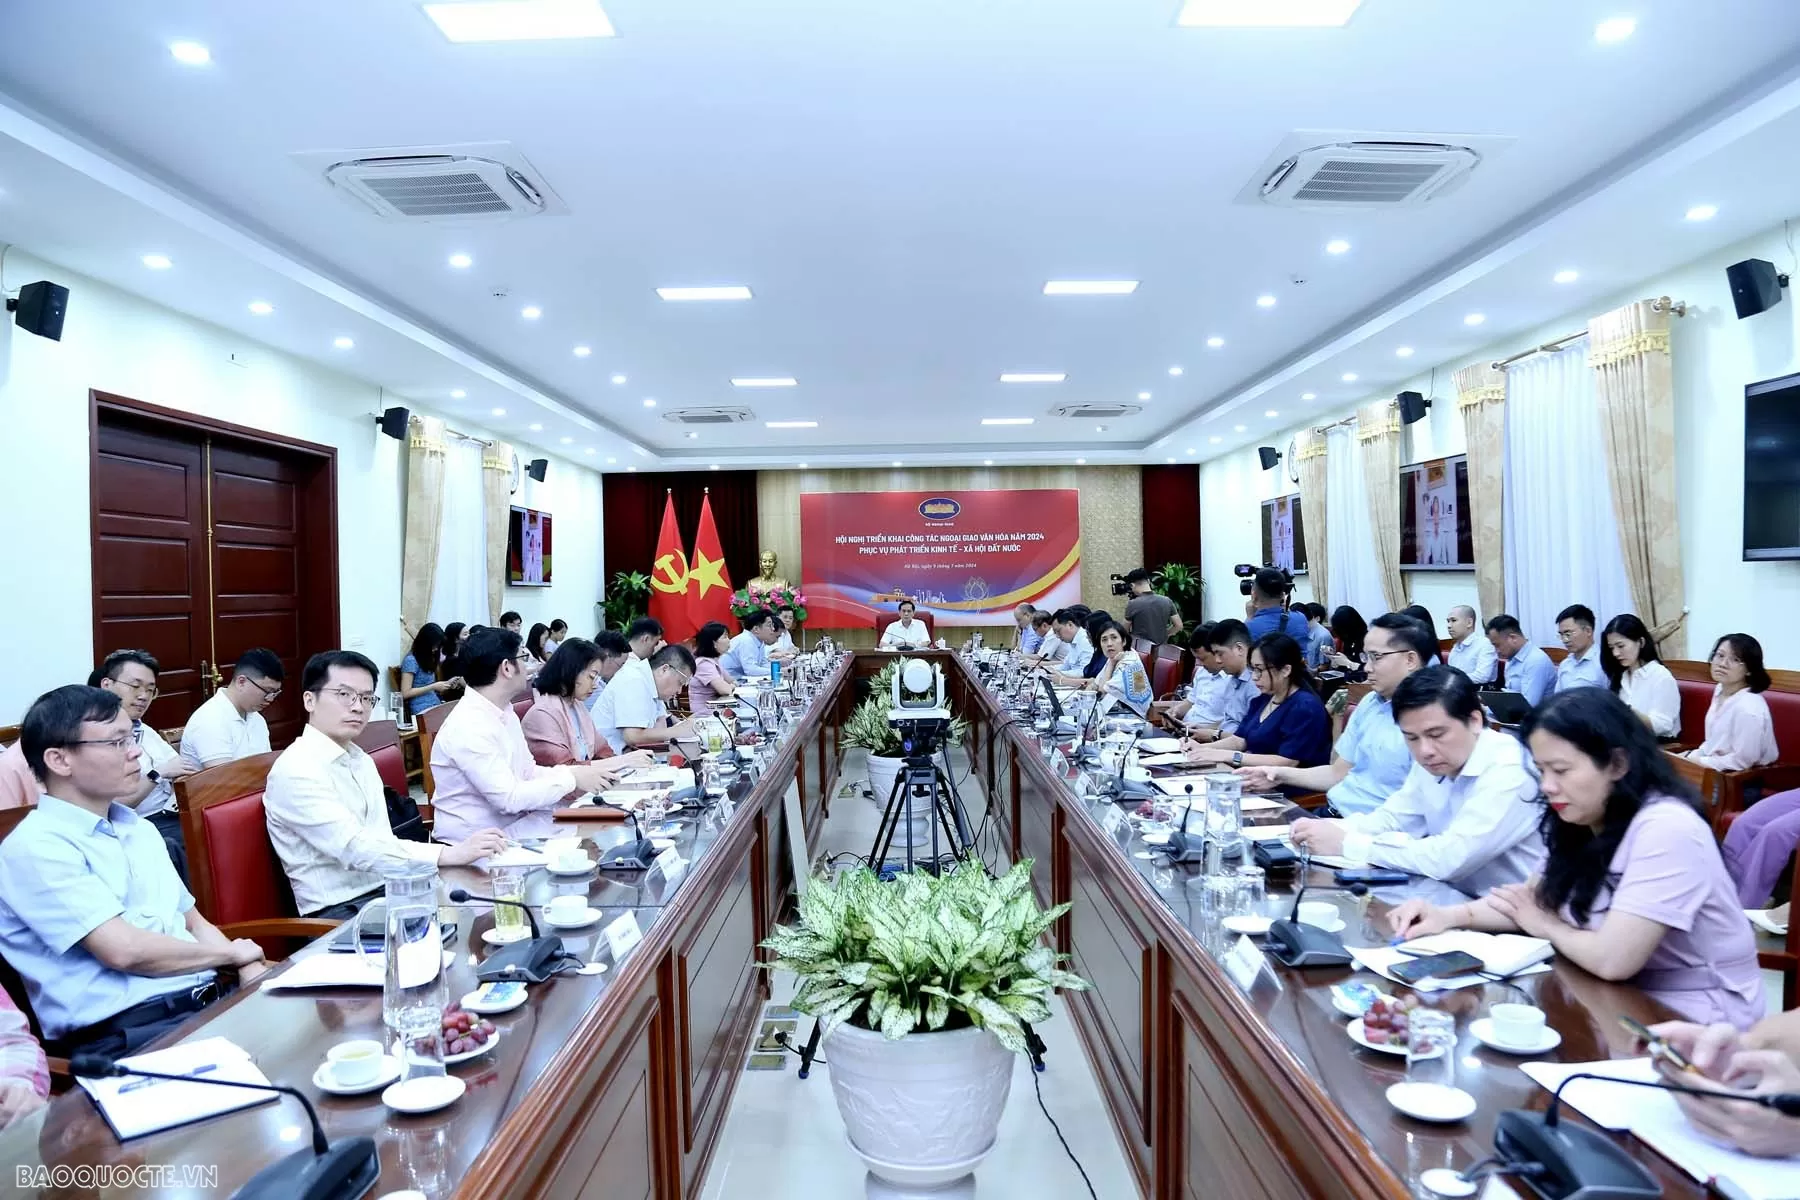 Ngoại giao văn hóa - nền tảng tinh thần tạo nên bản sắc của ngoại giao Việt Nam, phục vụ phát triển bền vững đất nước